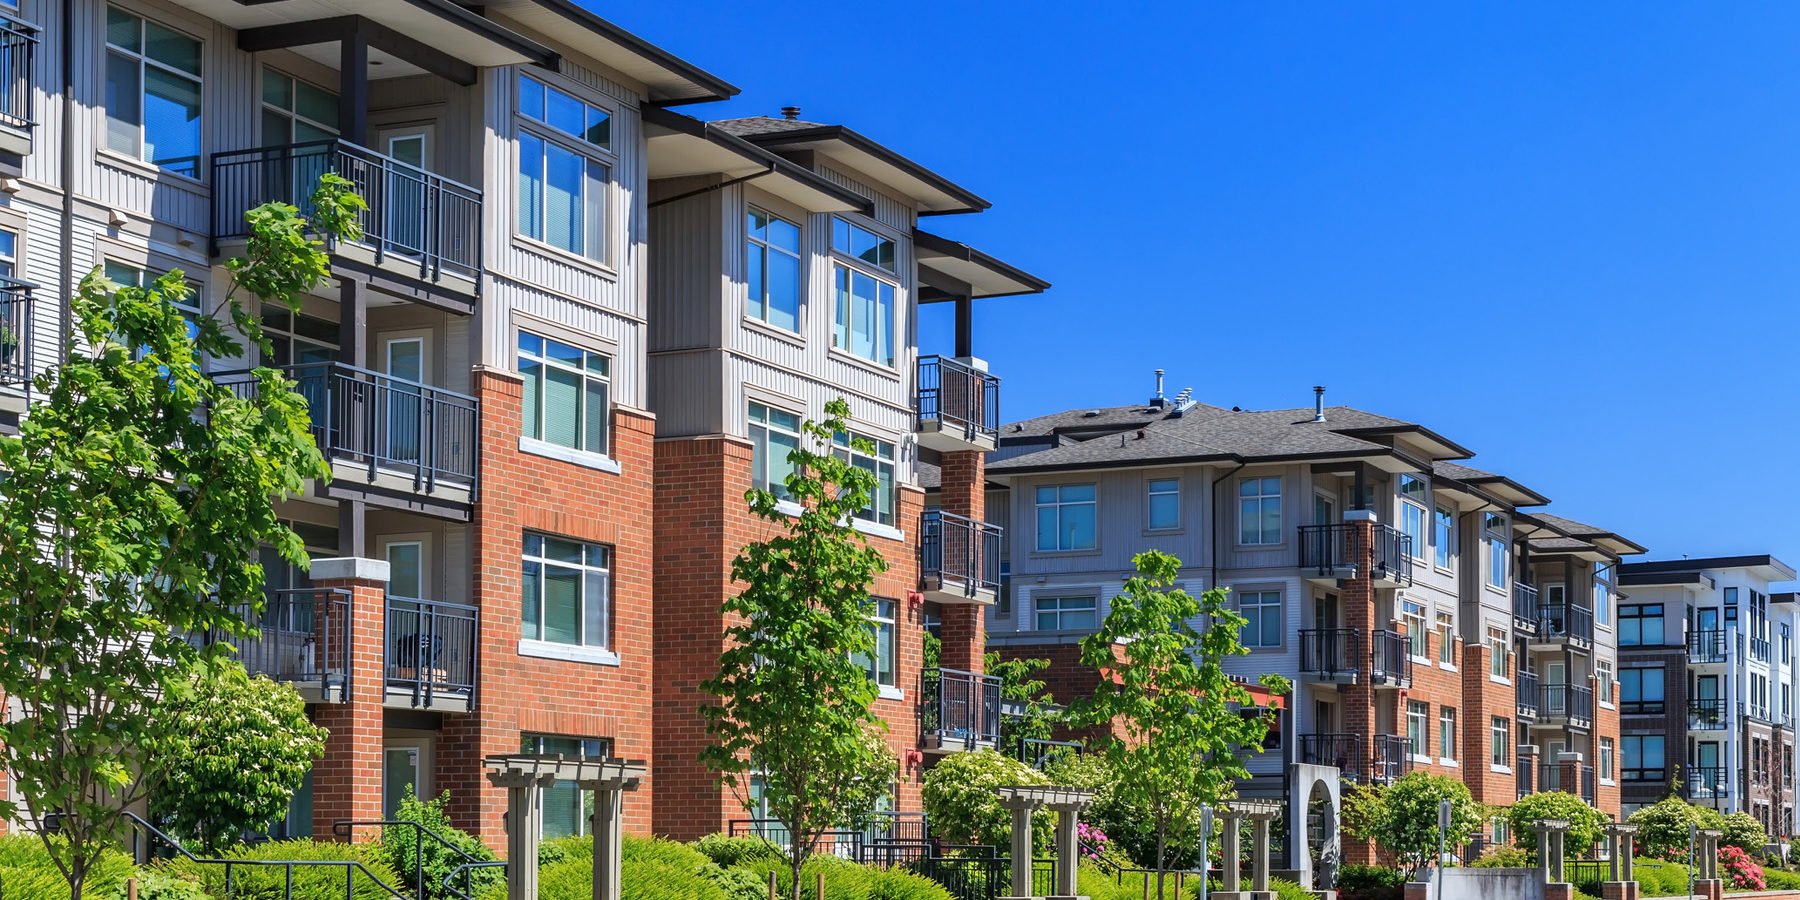 Nuevas reglas para las hipotecas de condominios por Freddie Mac | Los defectos en los edificios de condominios pueden frenar las ventas o reducir los precios